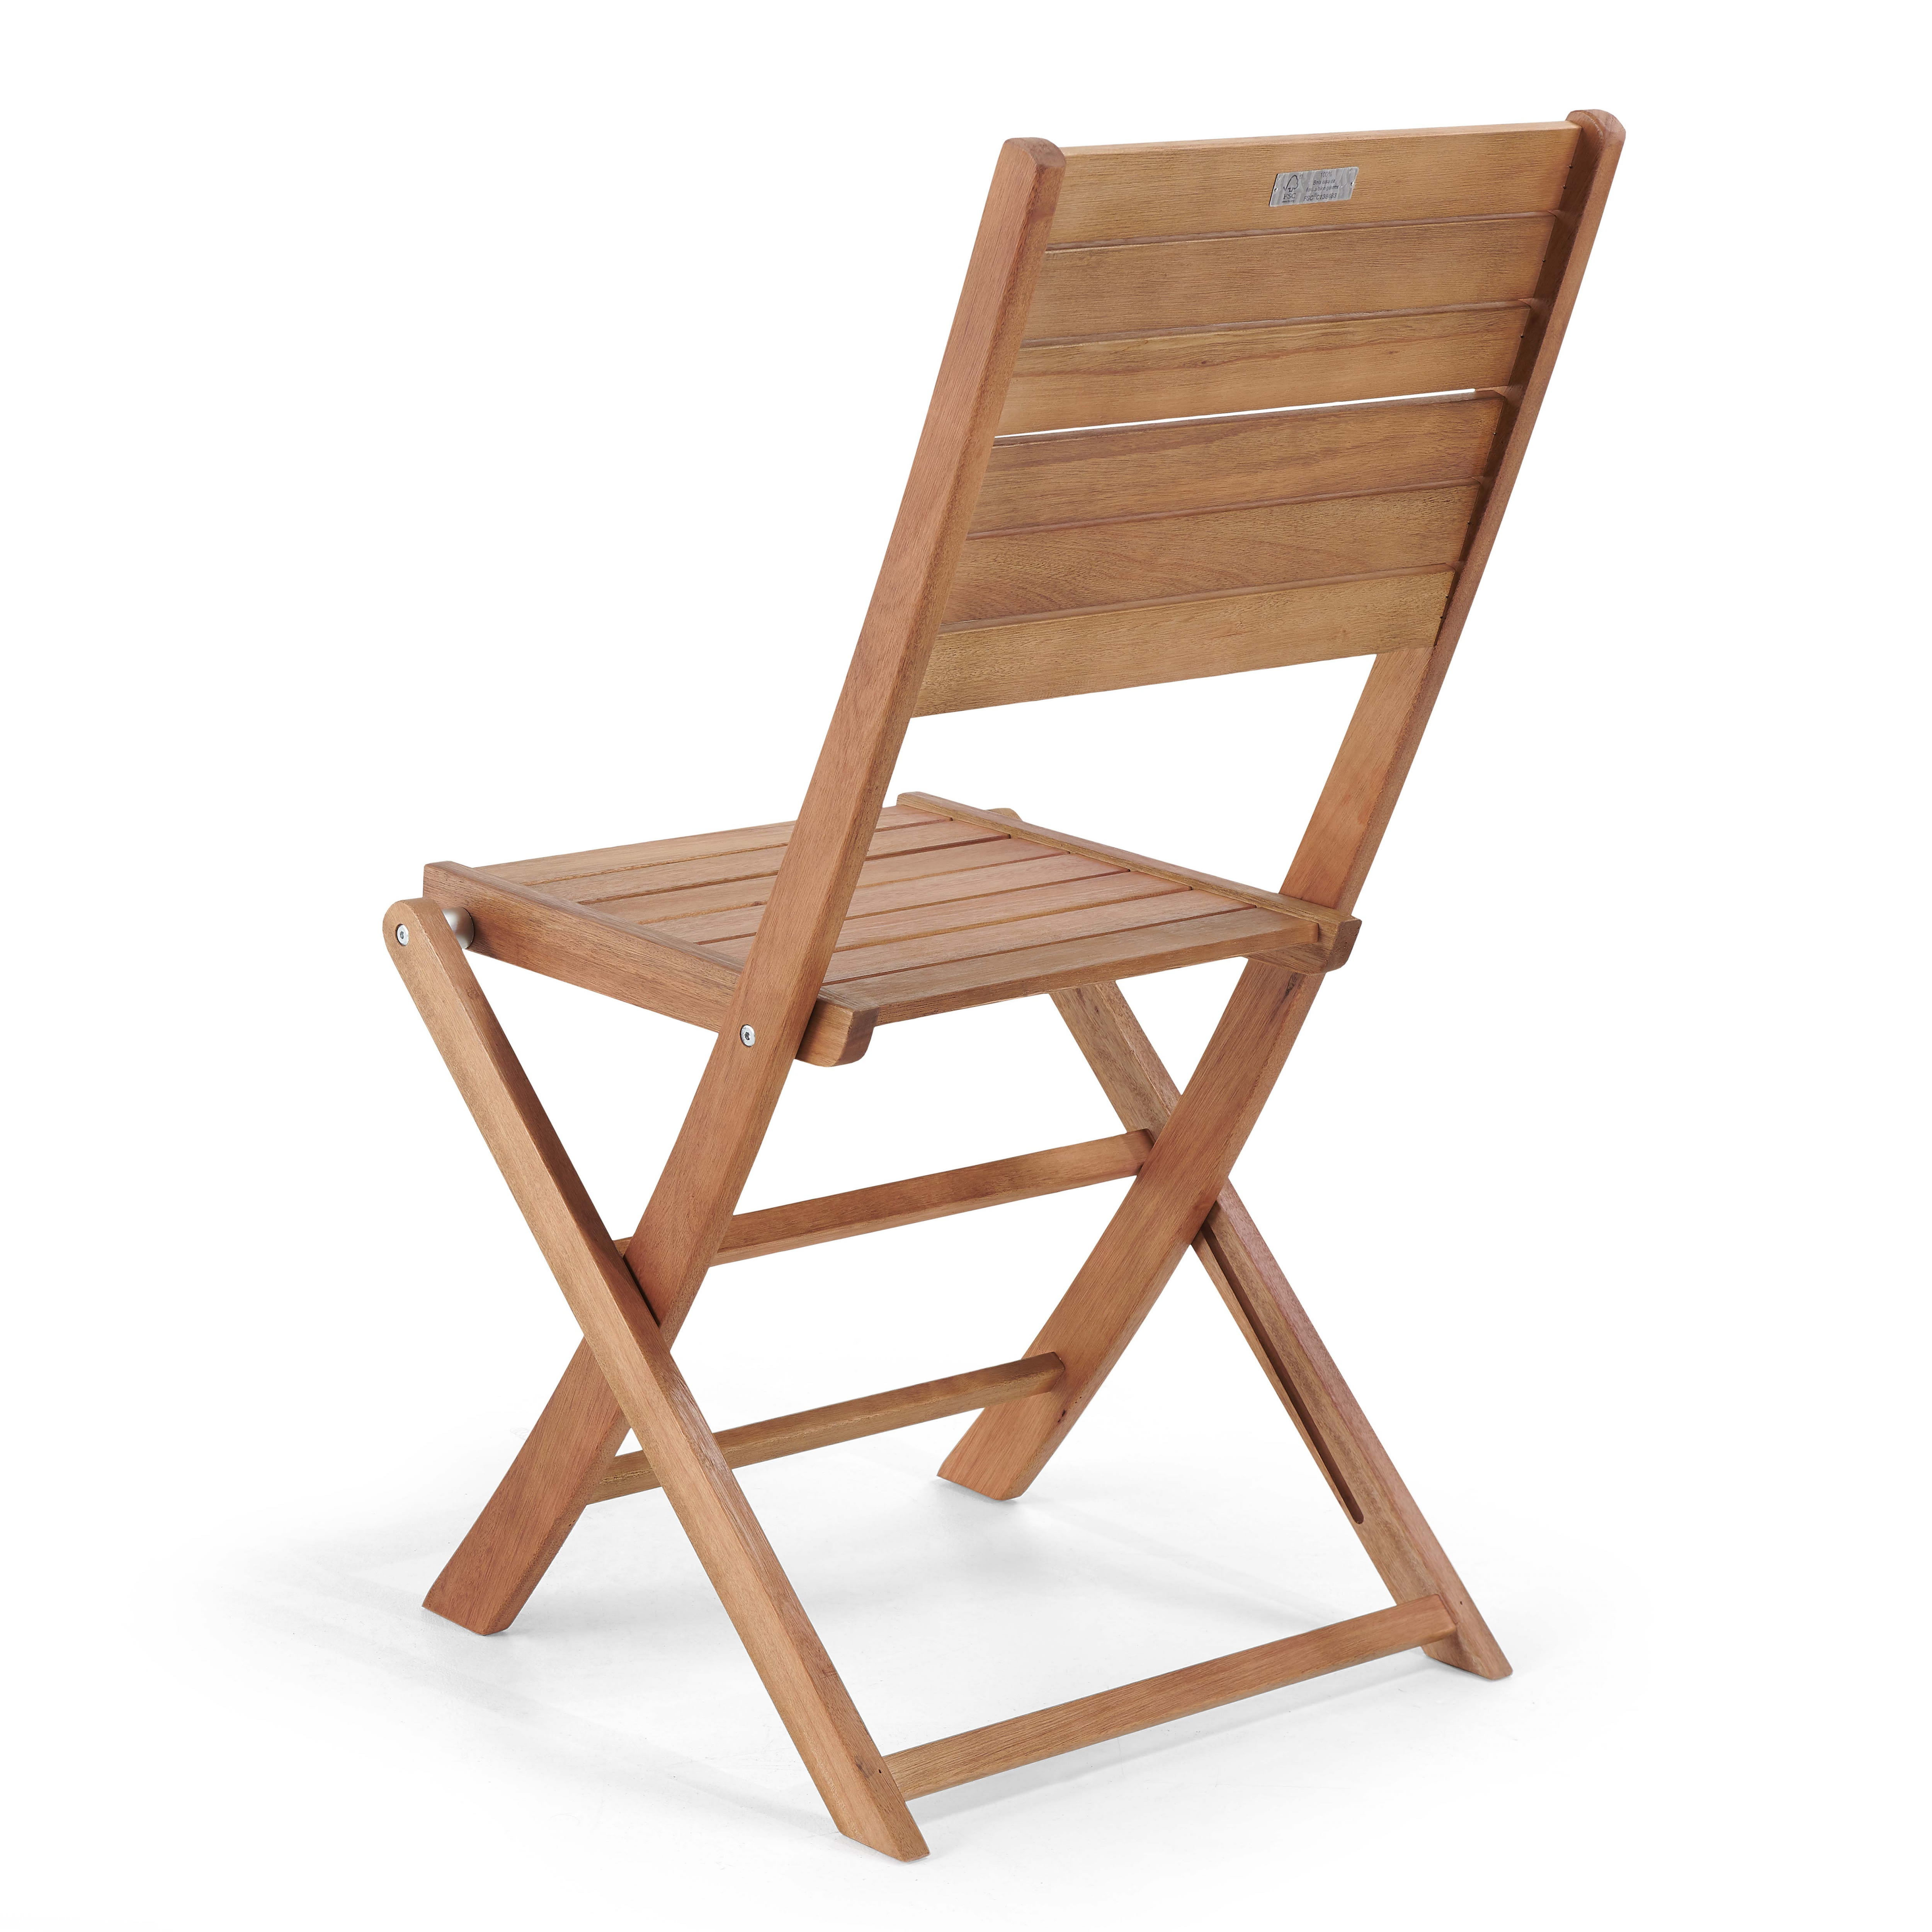 Lote de 2 sillas plegables de madera de Acacia y mimbre sintético